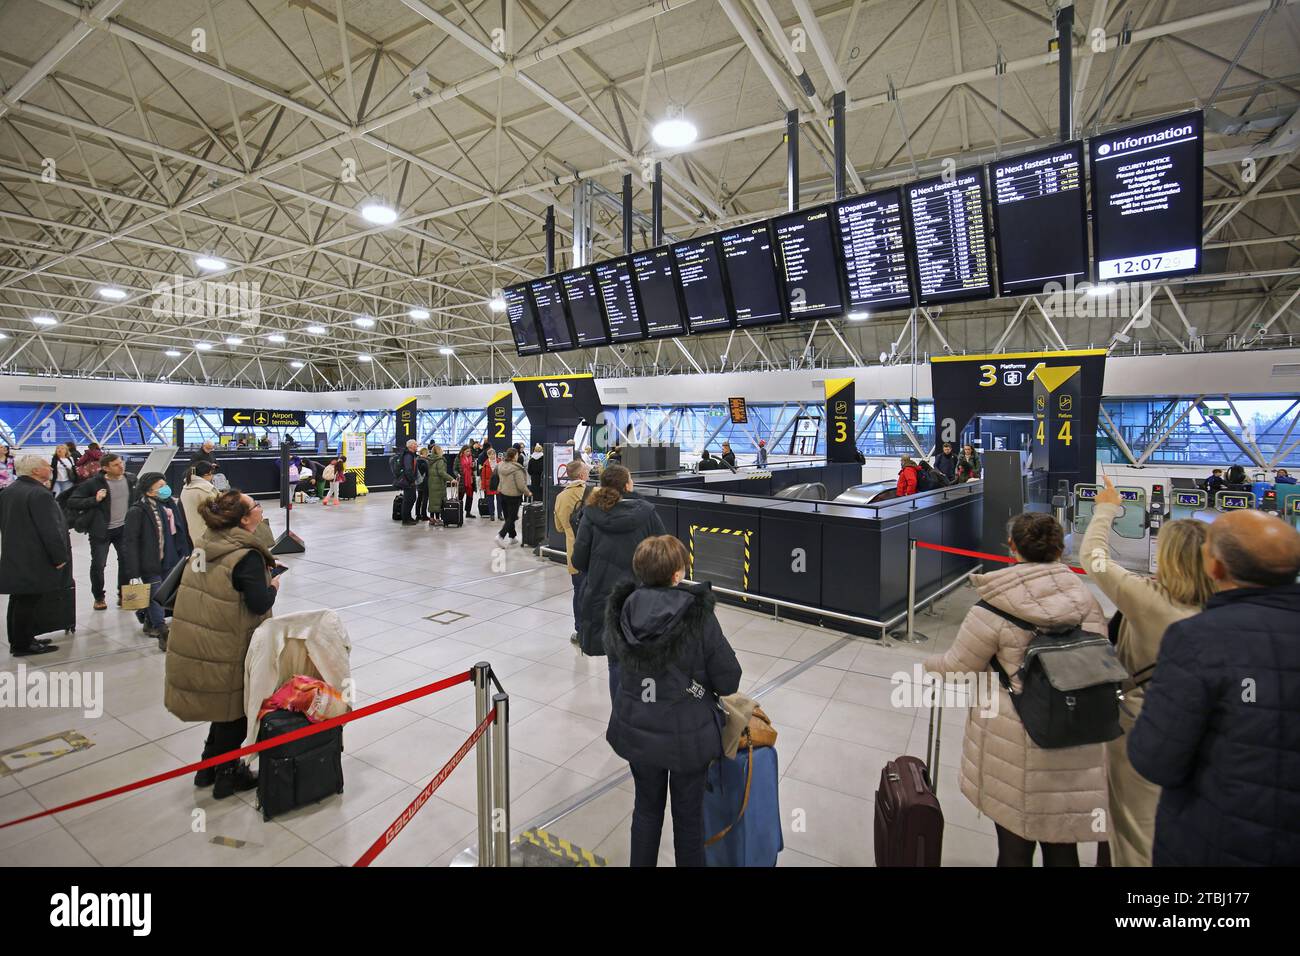 L'atrio della stazione ferroviaria recentemente ampliato presso l'aeroporto Gatwick di Londra, Regno Unito (dicembre 2023). Mostra i tabelloni informativi per la partenza del treno e il banco delle richieste. Foto Stock